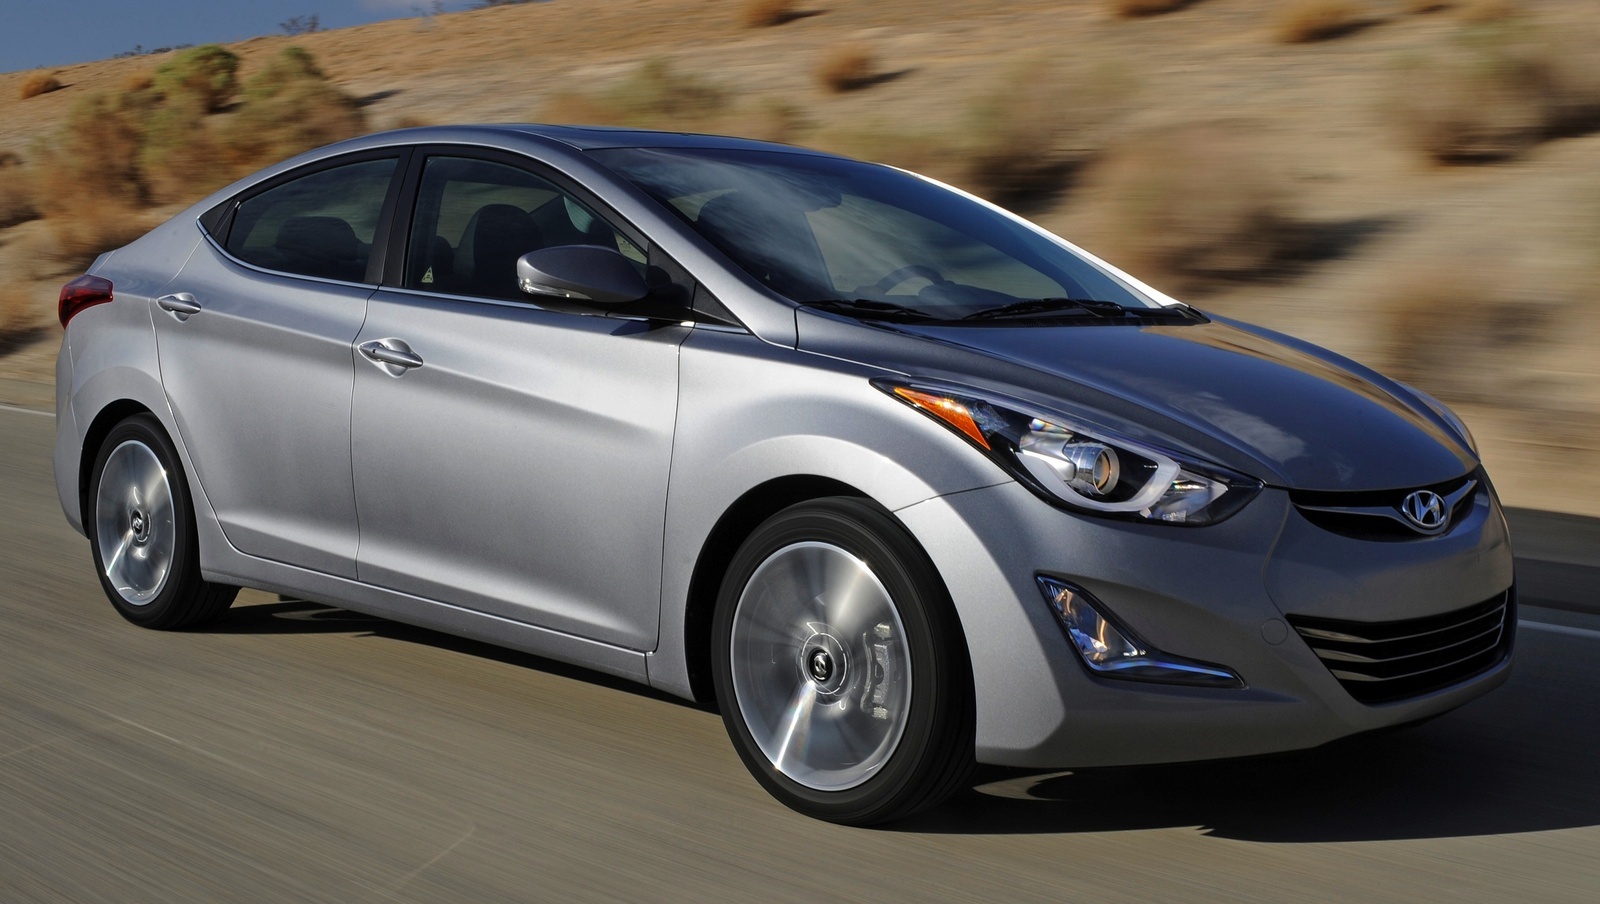 2015 Hyundai Elantra: Prices, Reviews & Pictures - CarGurus